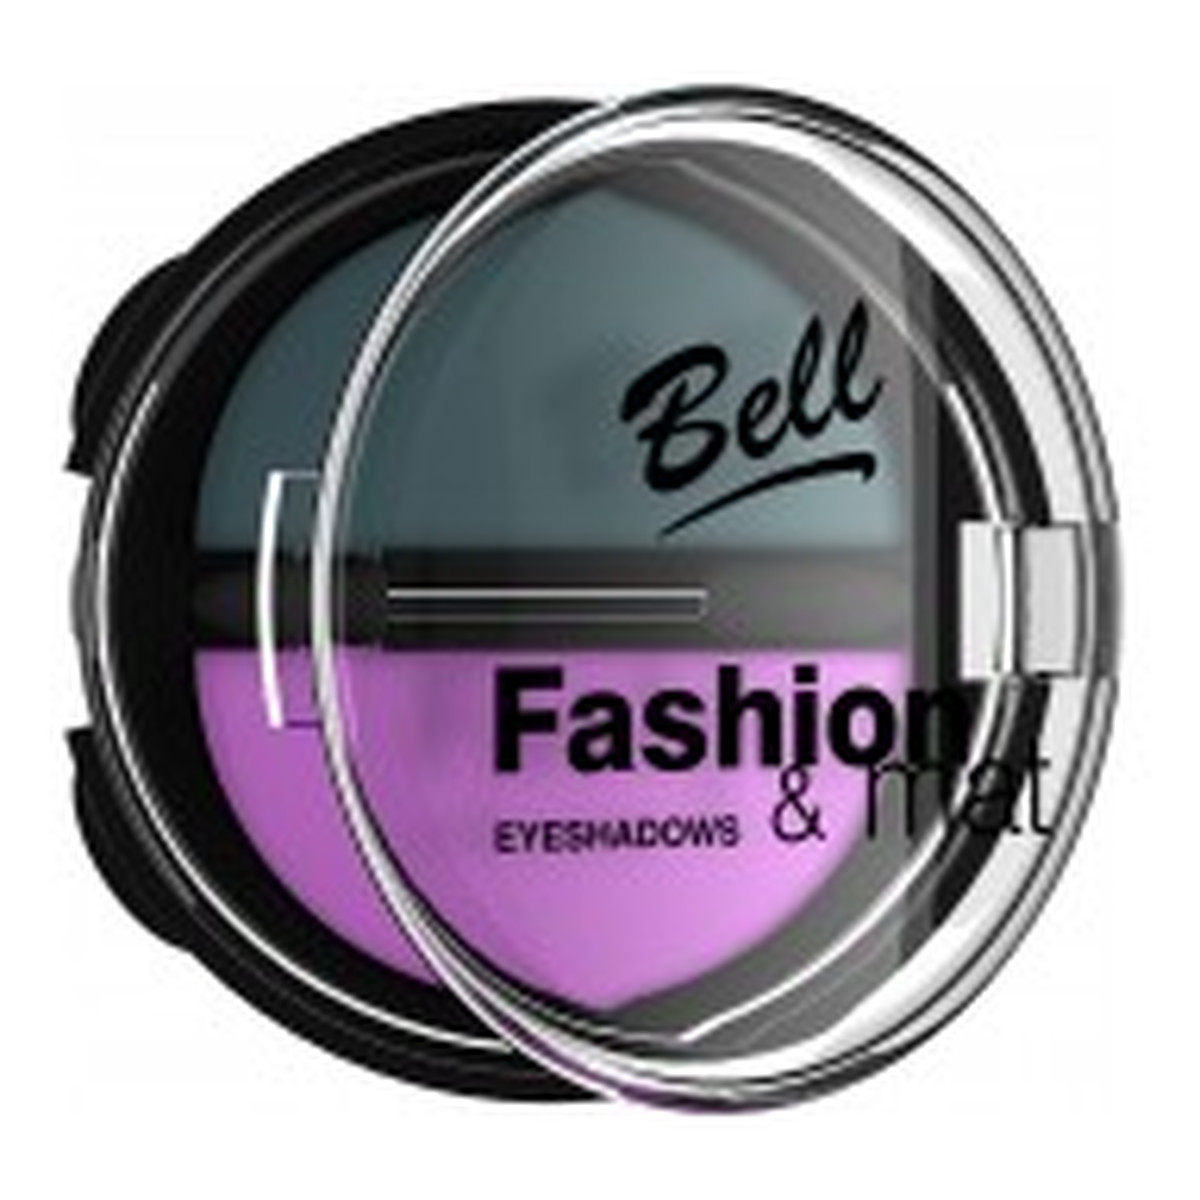 Bell Fashion & Mat Podwójny Matowy Cień Do Powiek 02